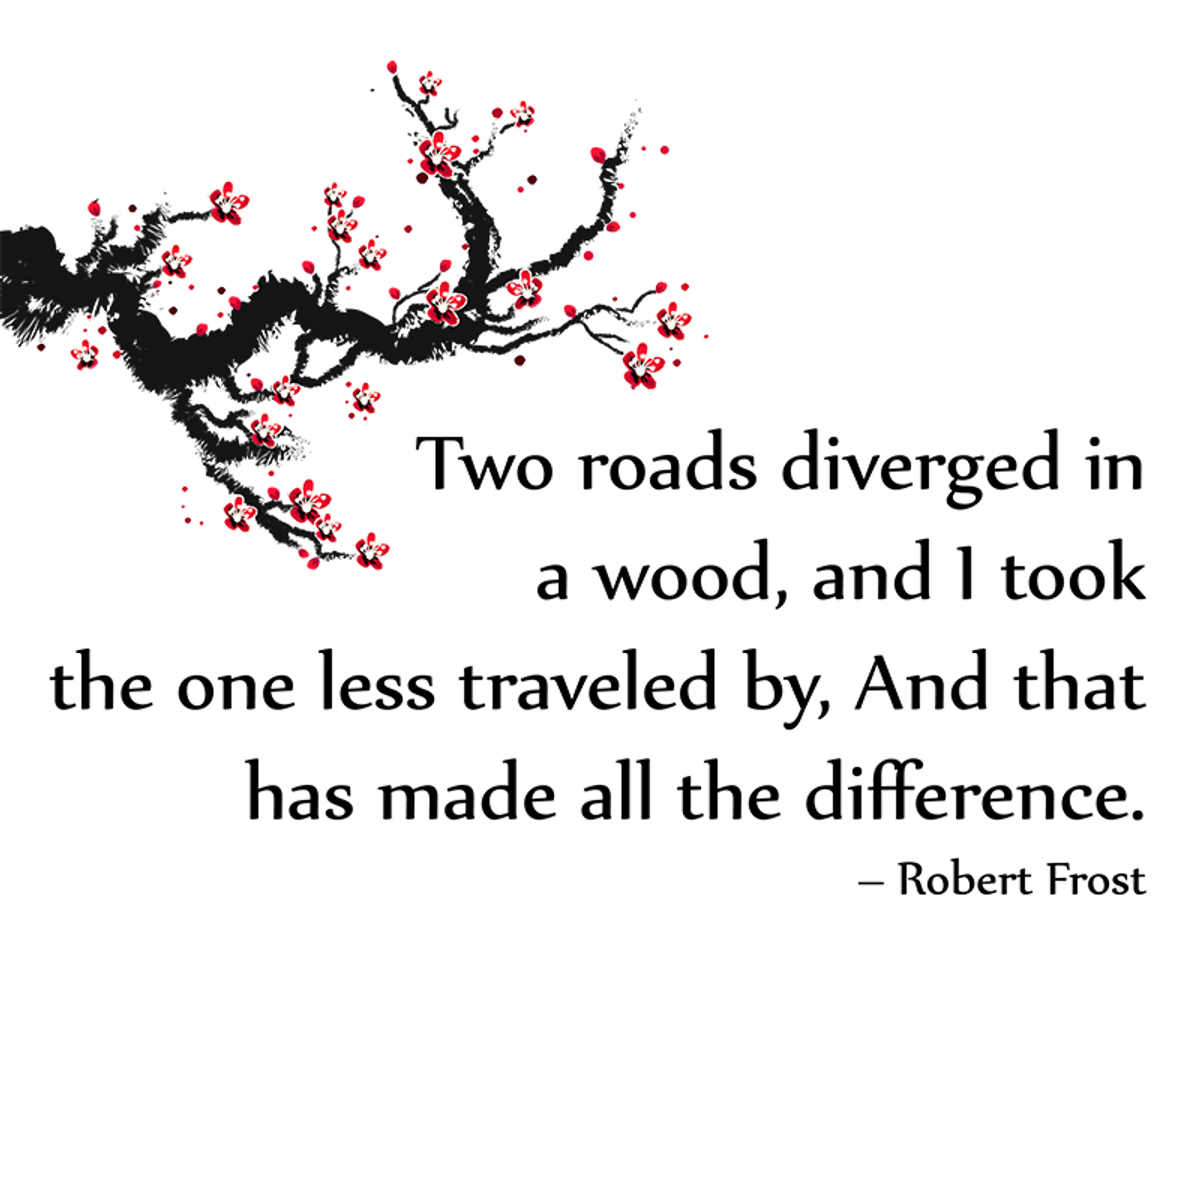 Robert Frost's 'A Road Not Taken': An Overview